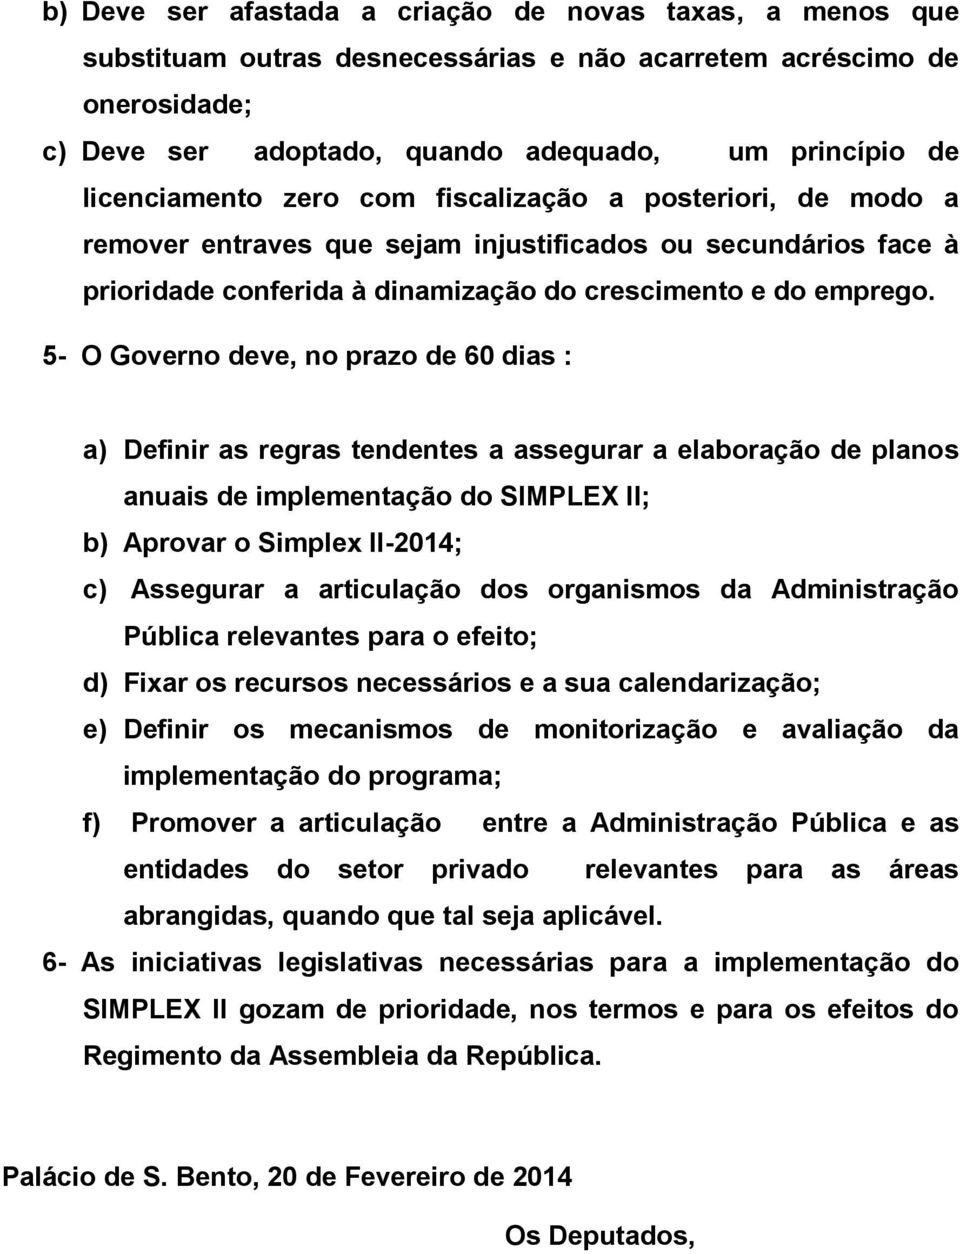 5- O Governo deve, no prazo de 60 dias : a) Definir as regras tendentes a assegurar a elaboração de planos anuais de implementação do SIMPLEX II; b) Aprovar o Simplex II-2014; c) Assegurar a